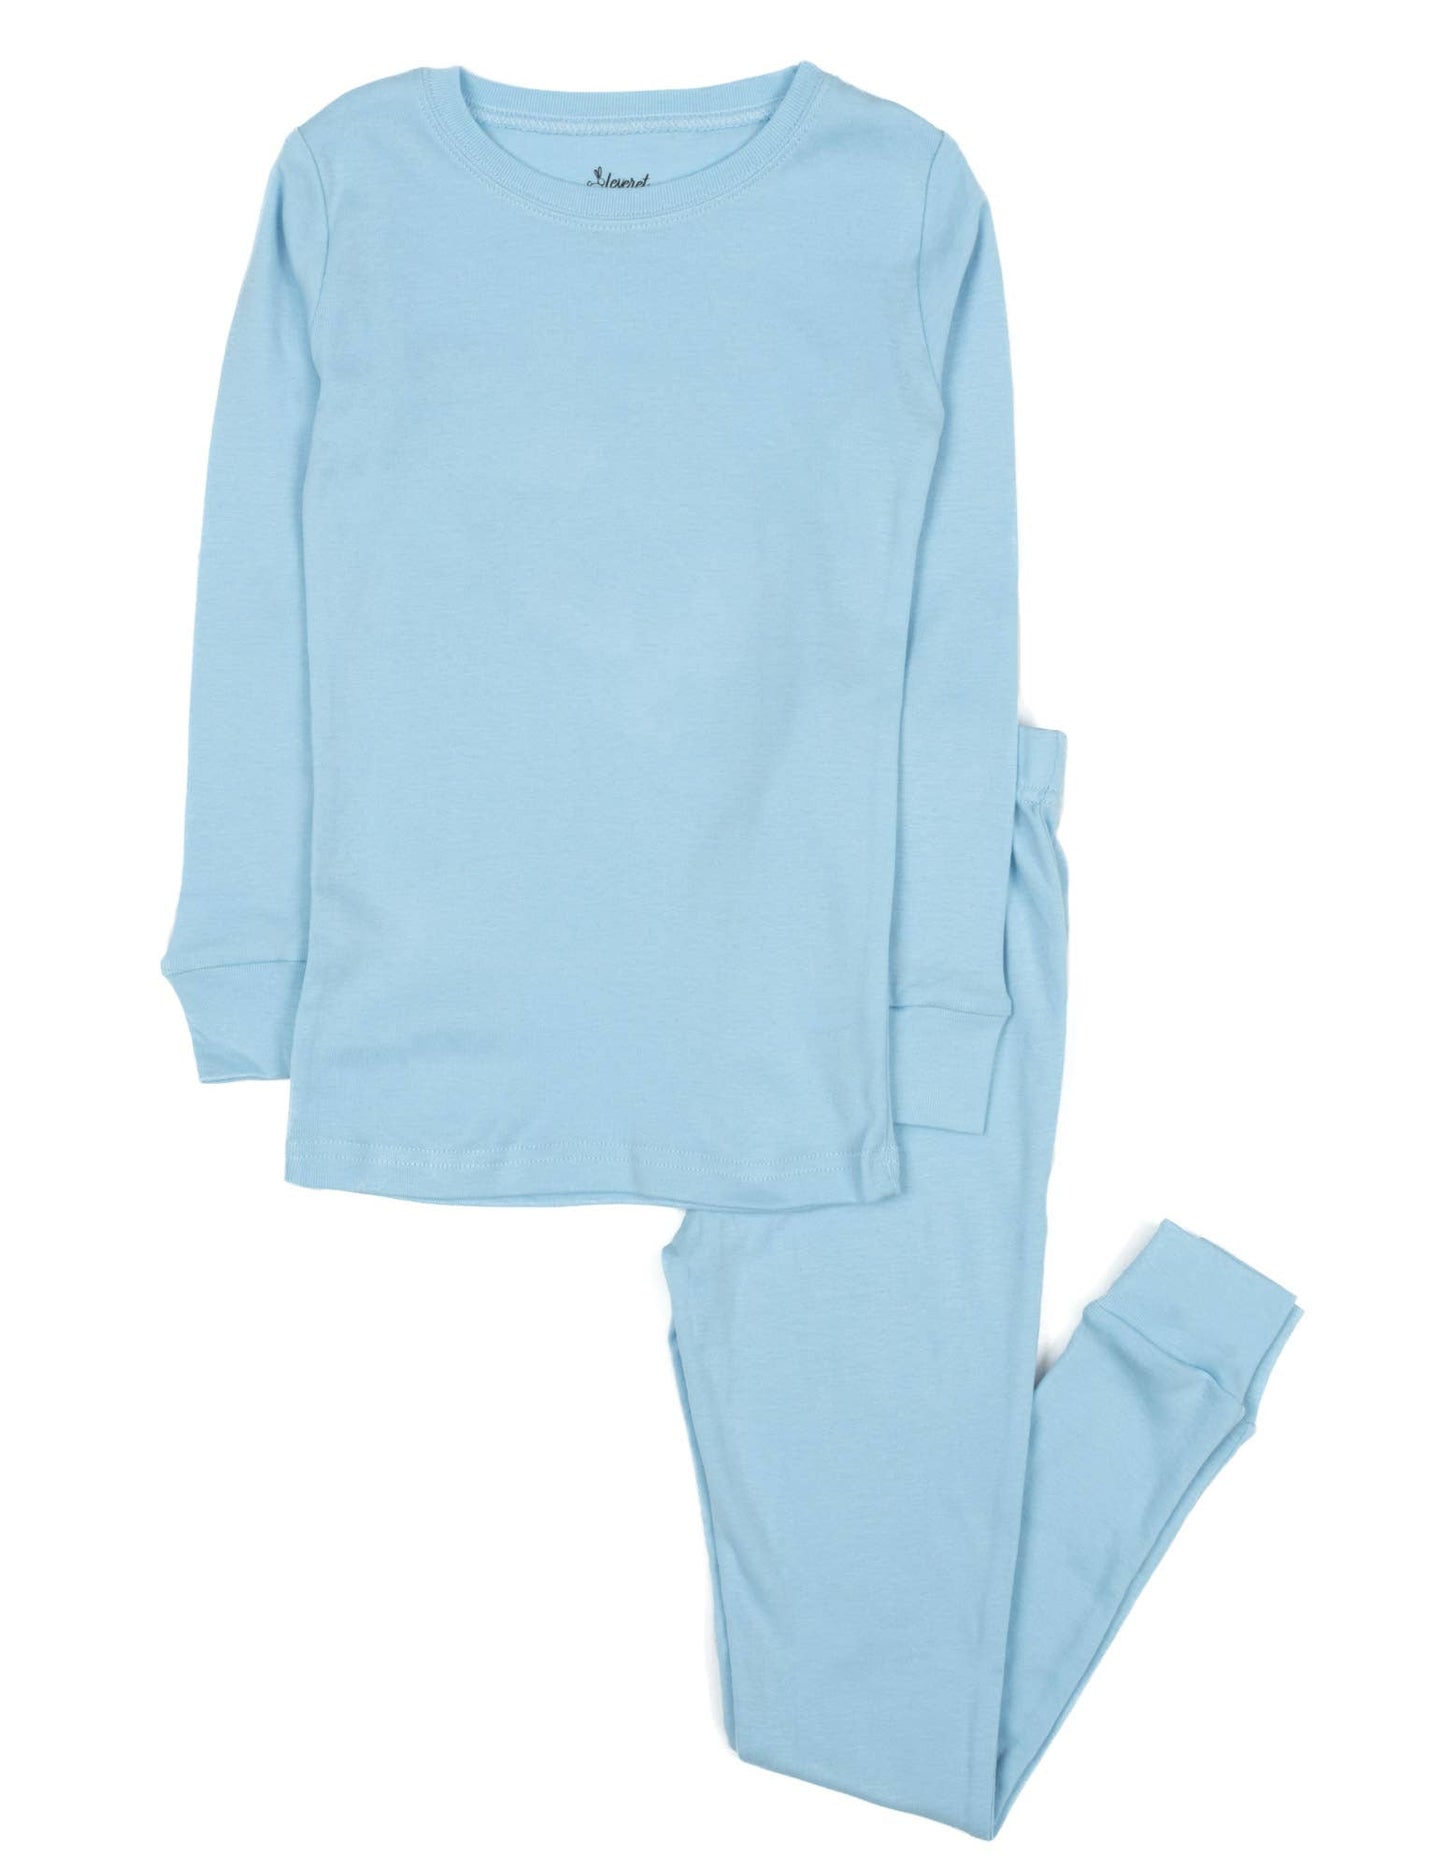 Kids Two Piece Cotton Pajamas - Light Blue